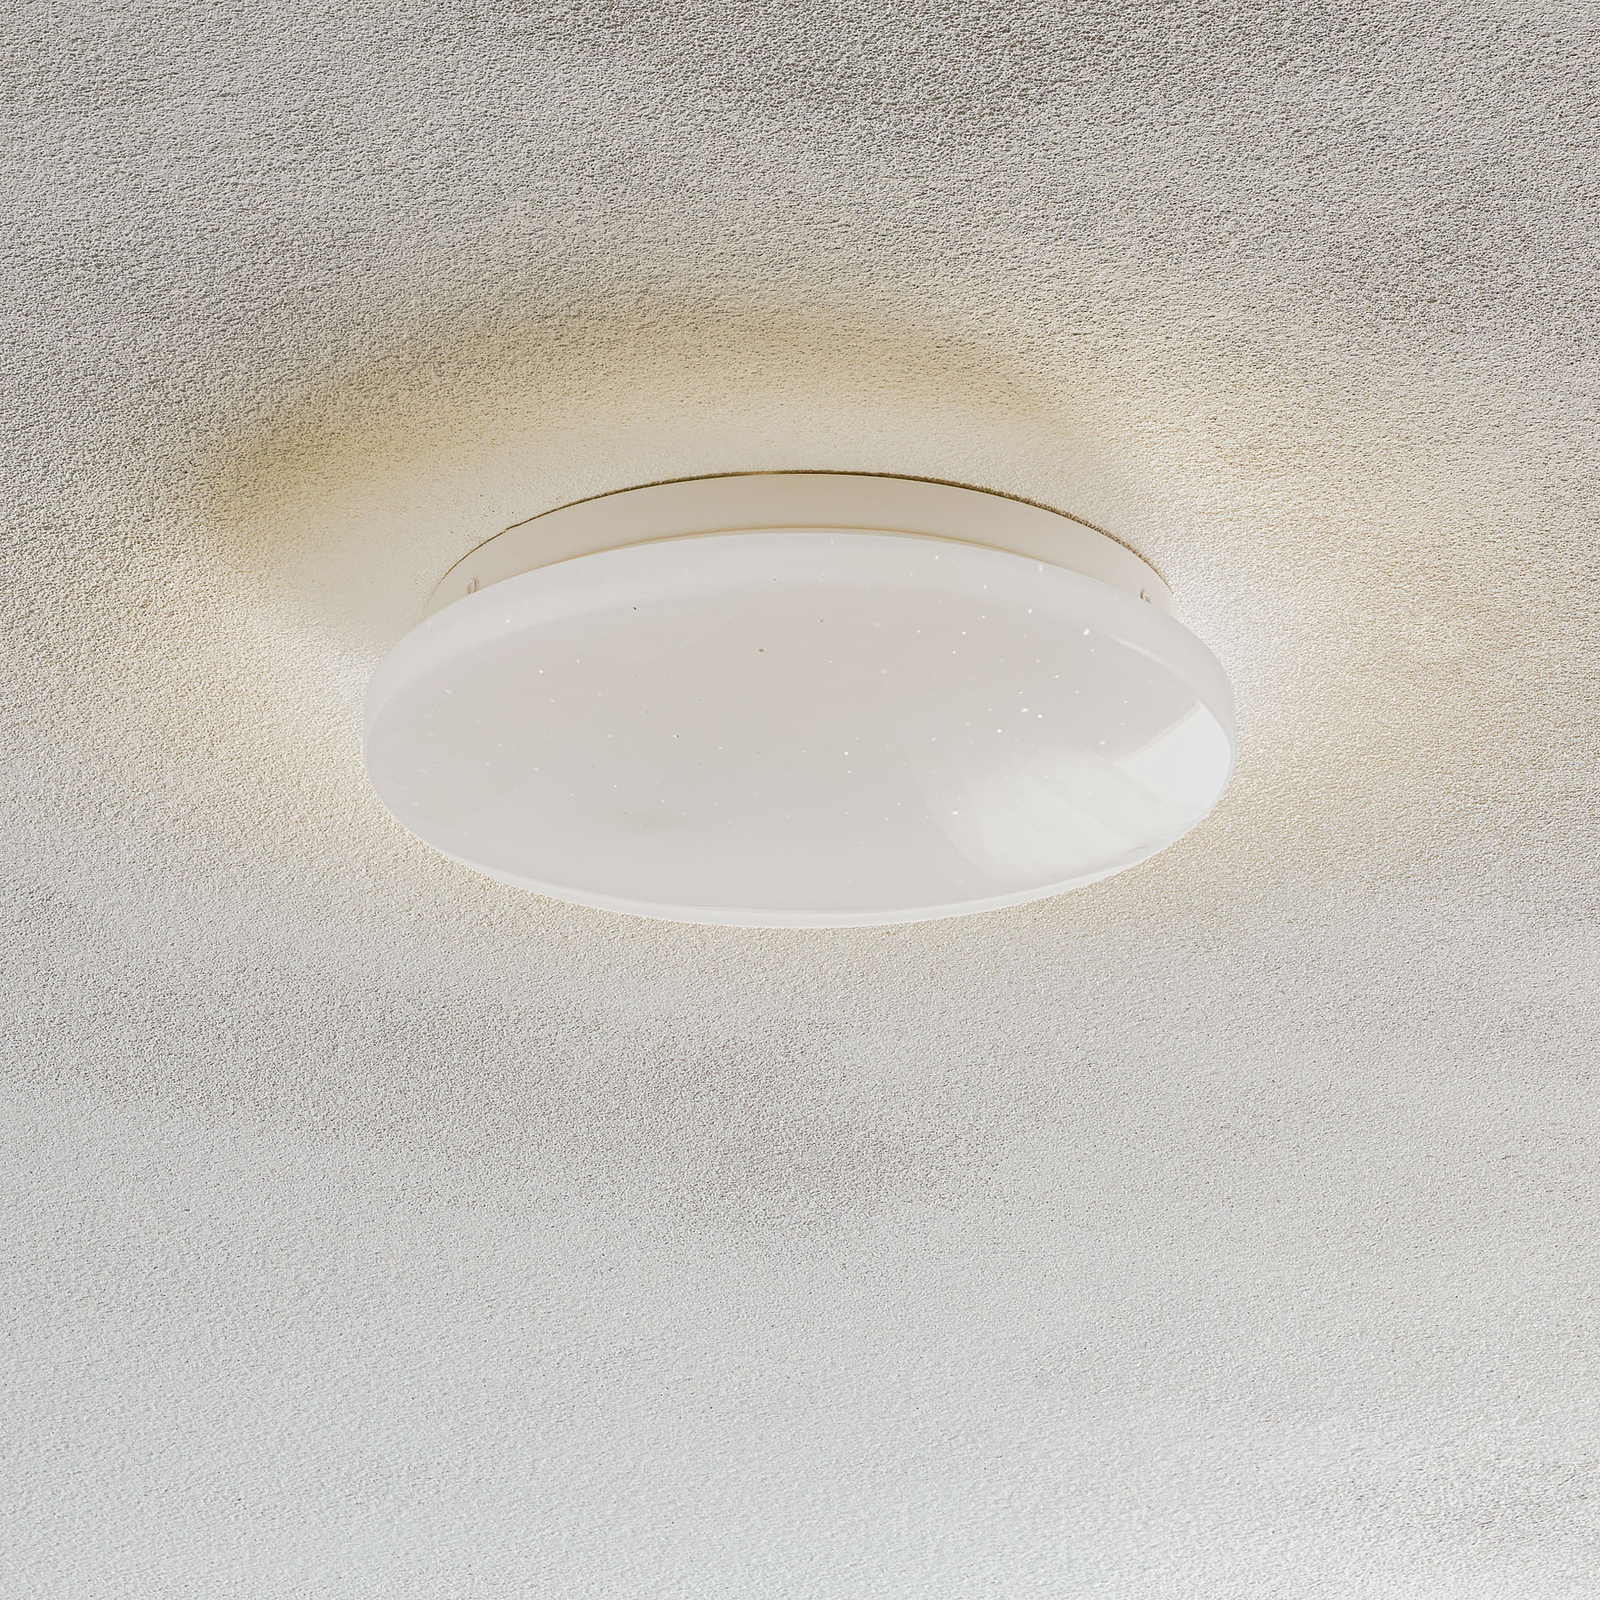 Schepsel Riskeren hoop LED plafondlamp 3388-016 sterrenhemel 22cm | Lampen24.be